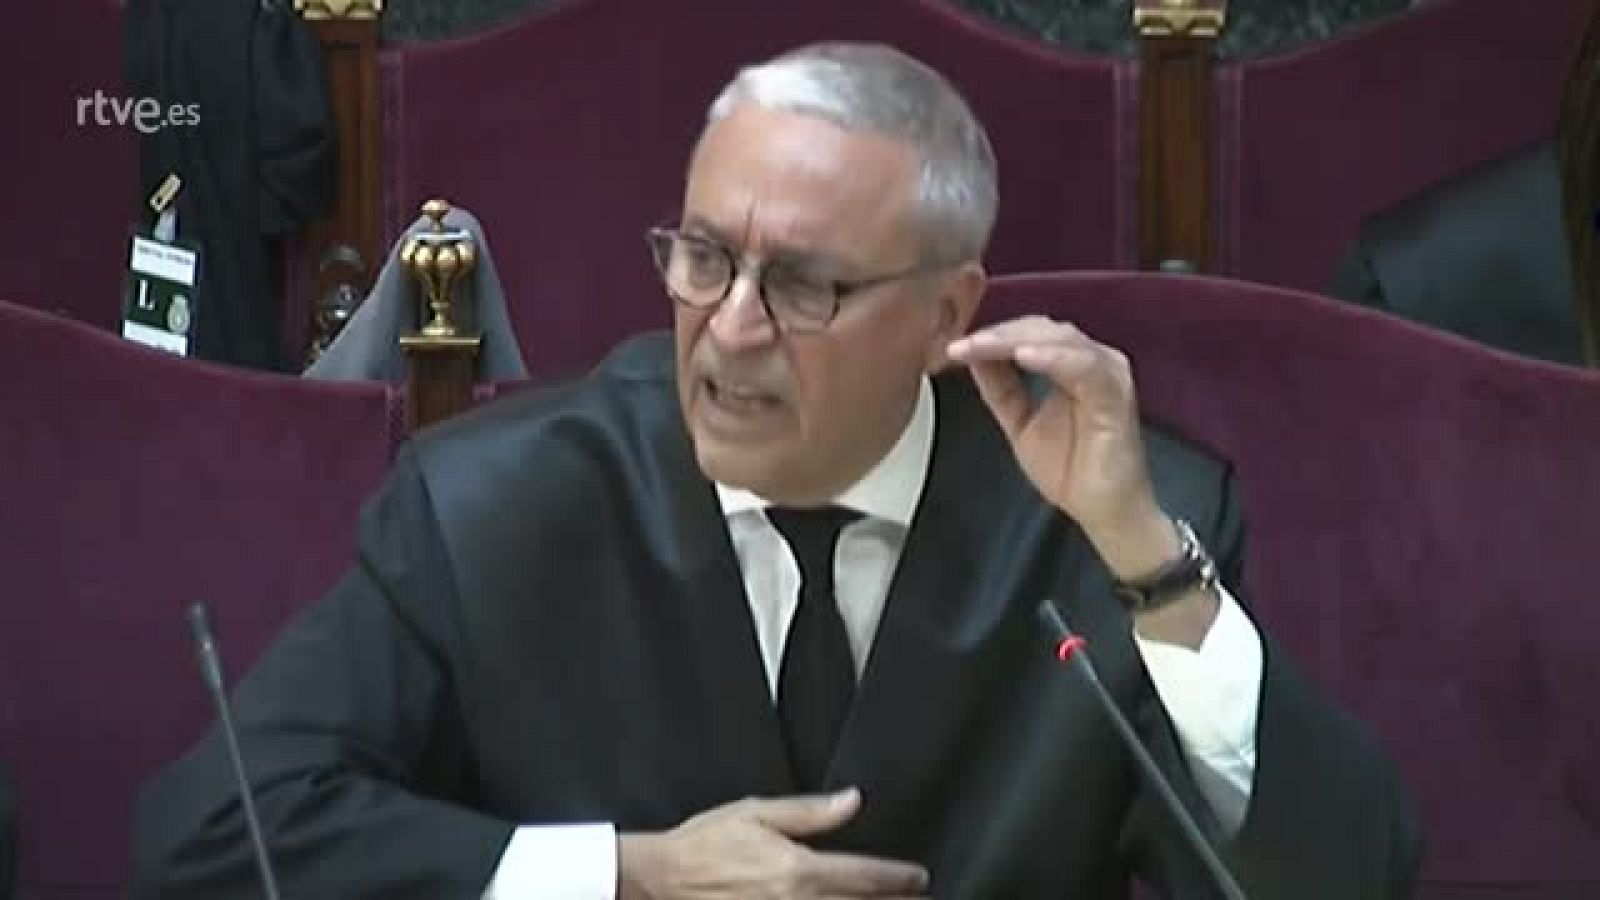 Juicio procés: El abogado de Joaquim Forn: "La trinchera de la desobediencia la cedo con gusto"